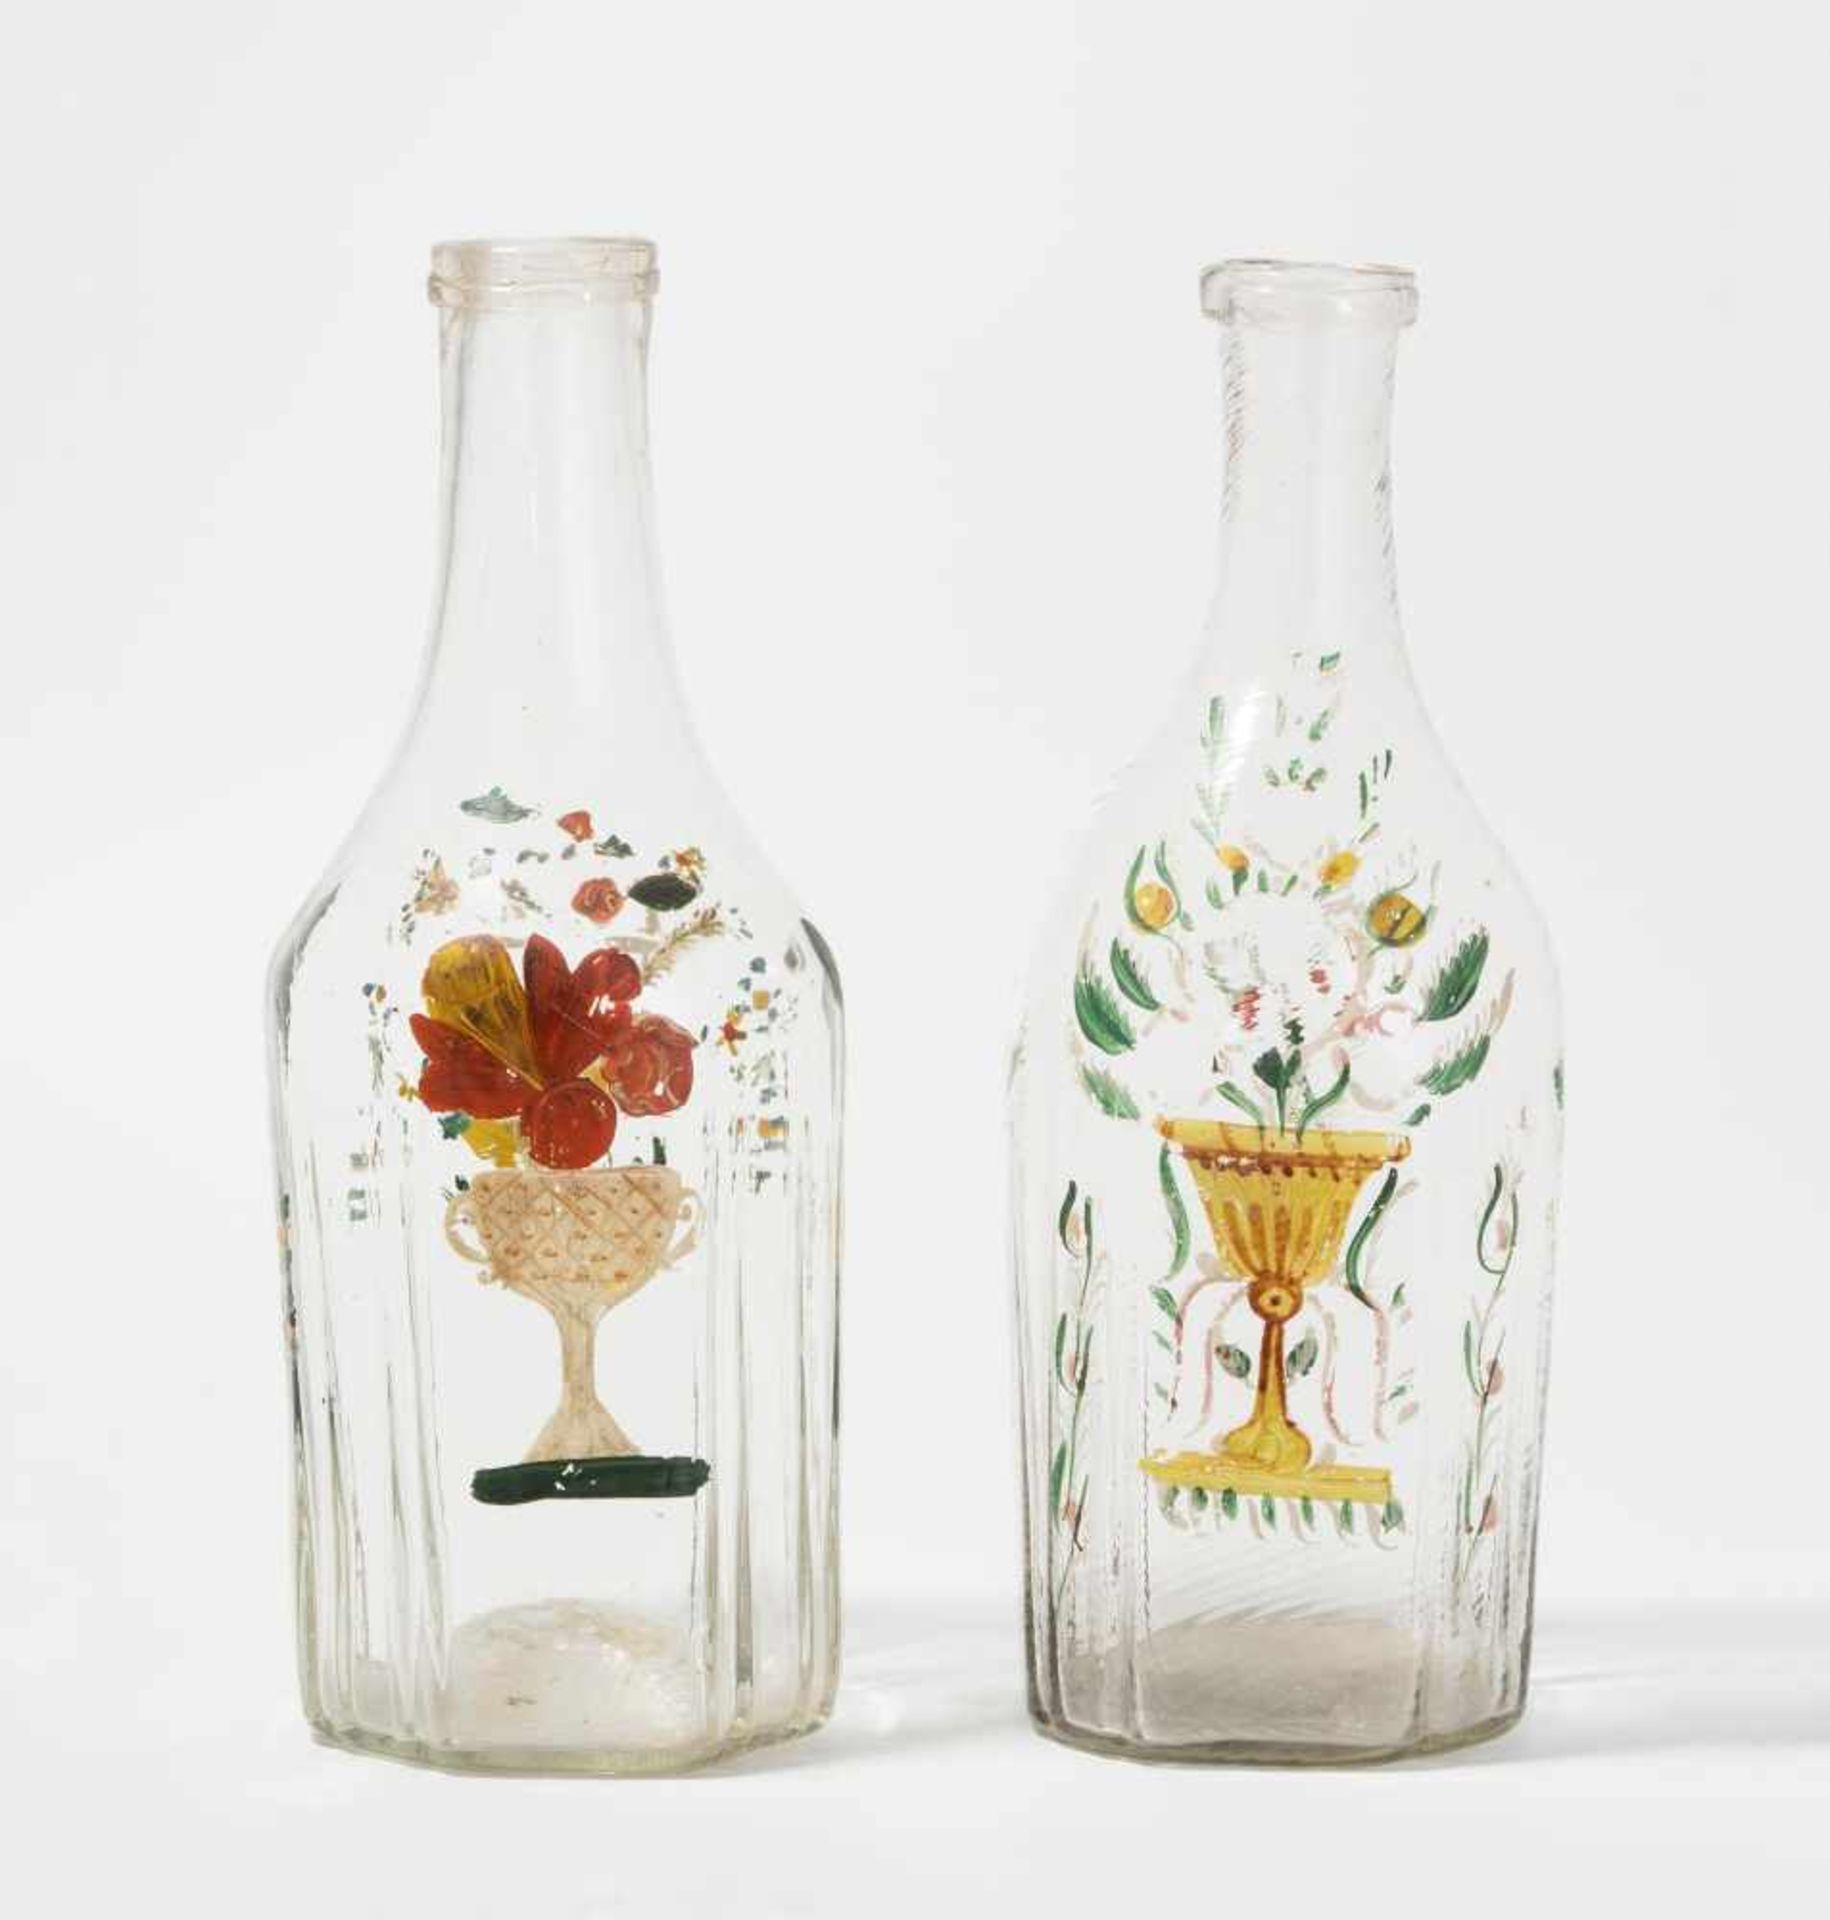 2 Flaschen, alpenländisch 19.Jh. Flühli. Farbloses Glas, eine Flasche schrägoptisch, Emailmalerei: